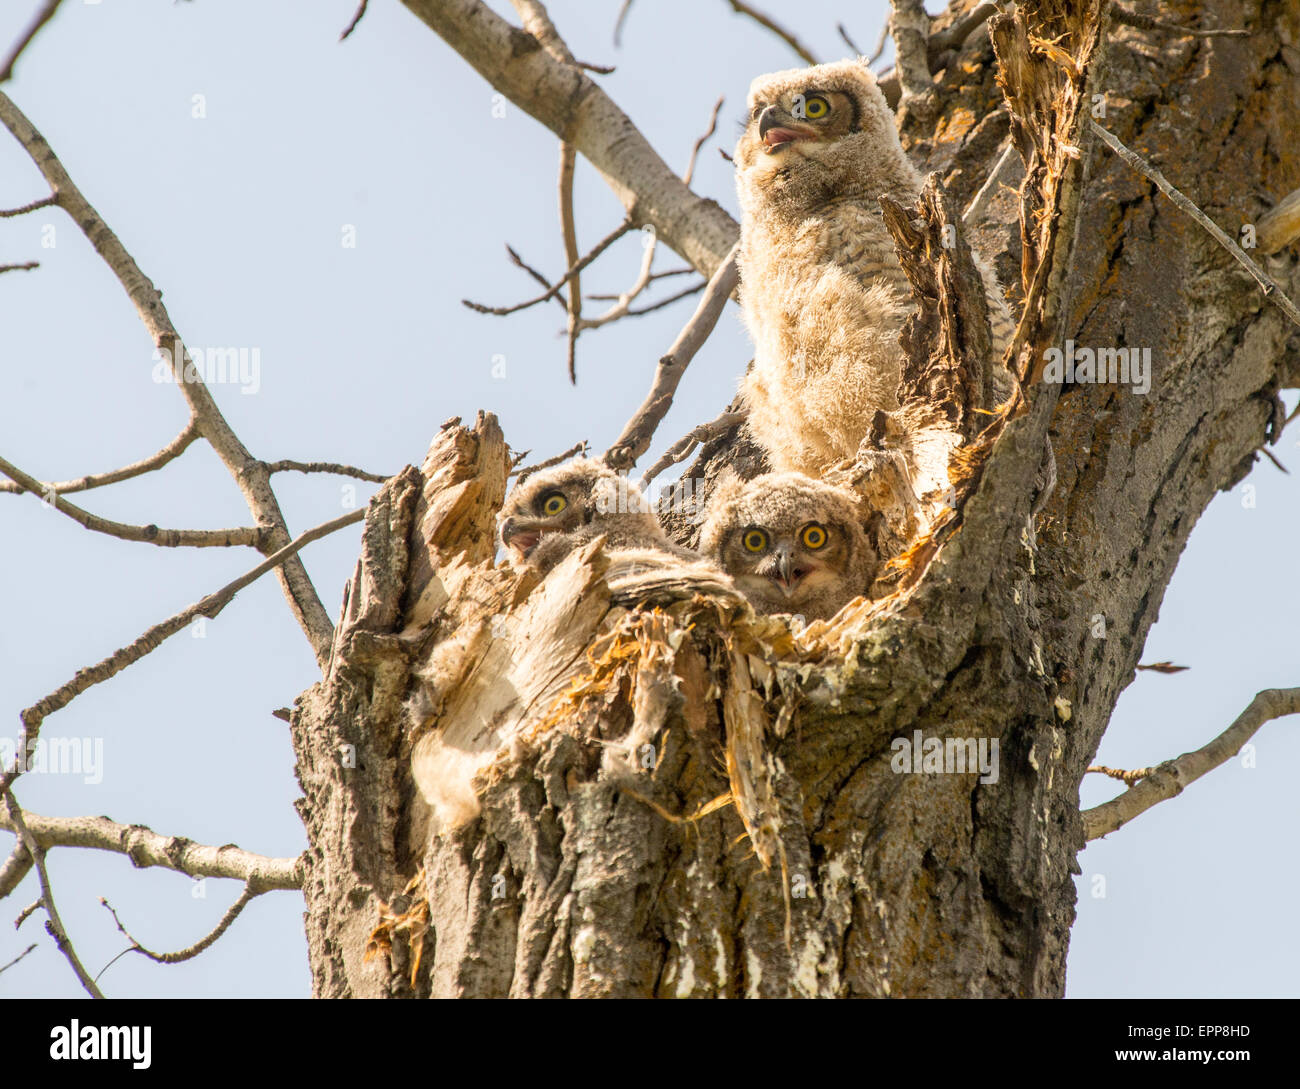 Les hiboux, chouettes, Grande Corne nouveau né Owlets perché en nid d'une cavité d'arbre. Rivière Bose Greenbelt, Boise, Idaho USA Banque D'Images